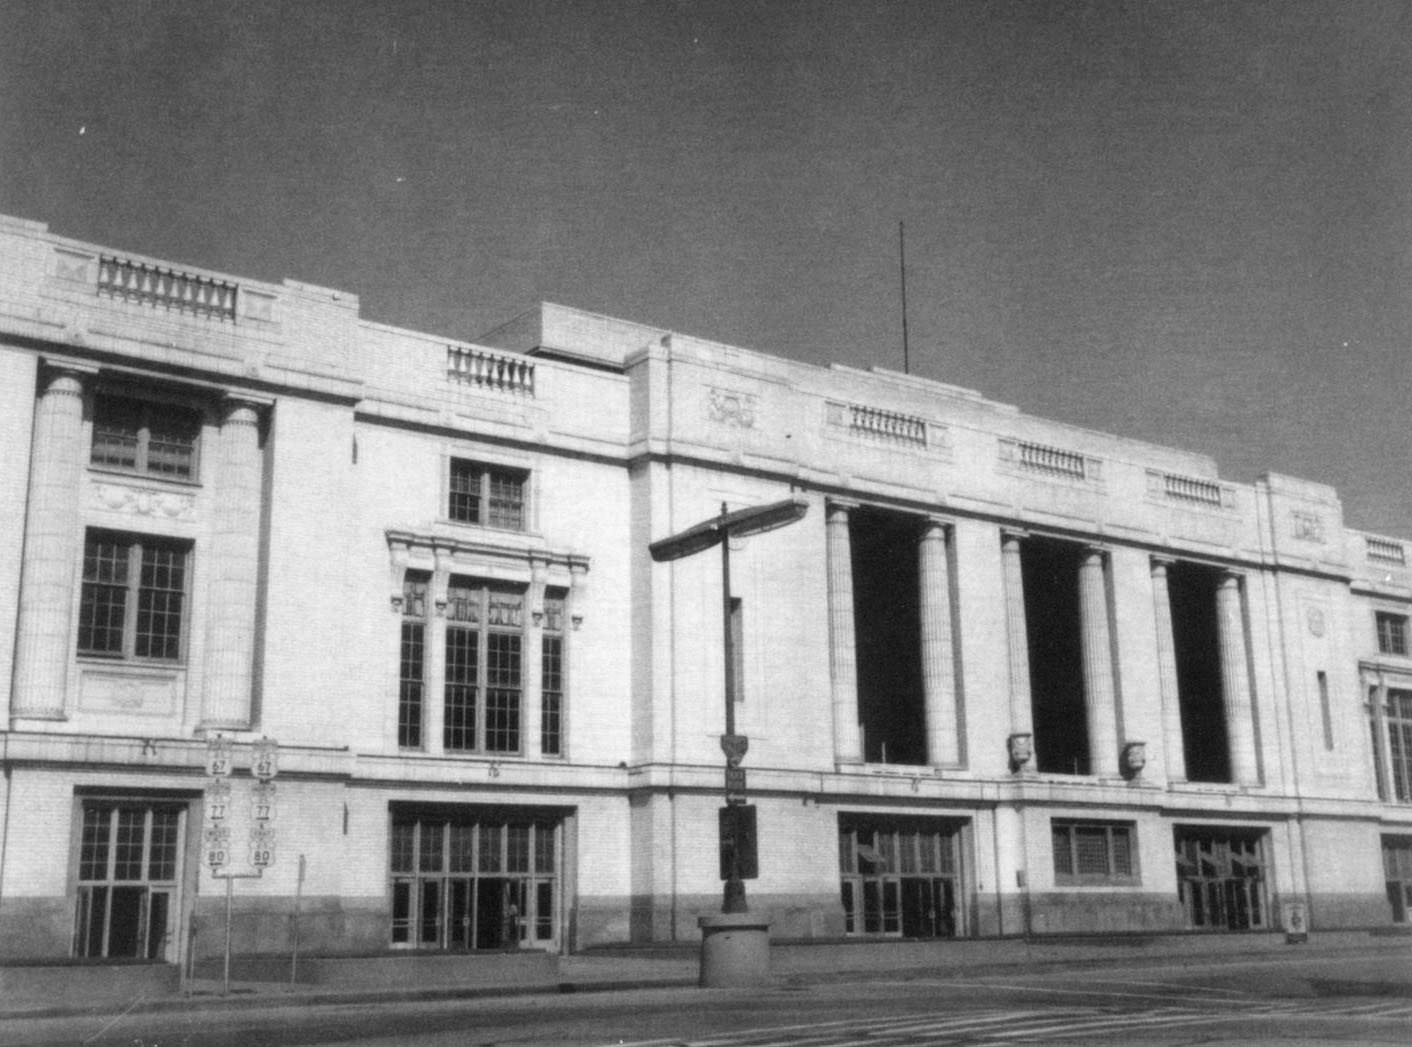 Union Station in Dallas, 1968